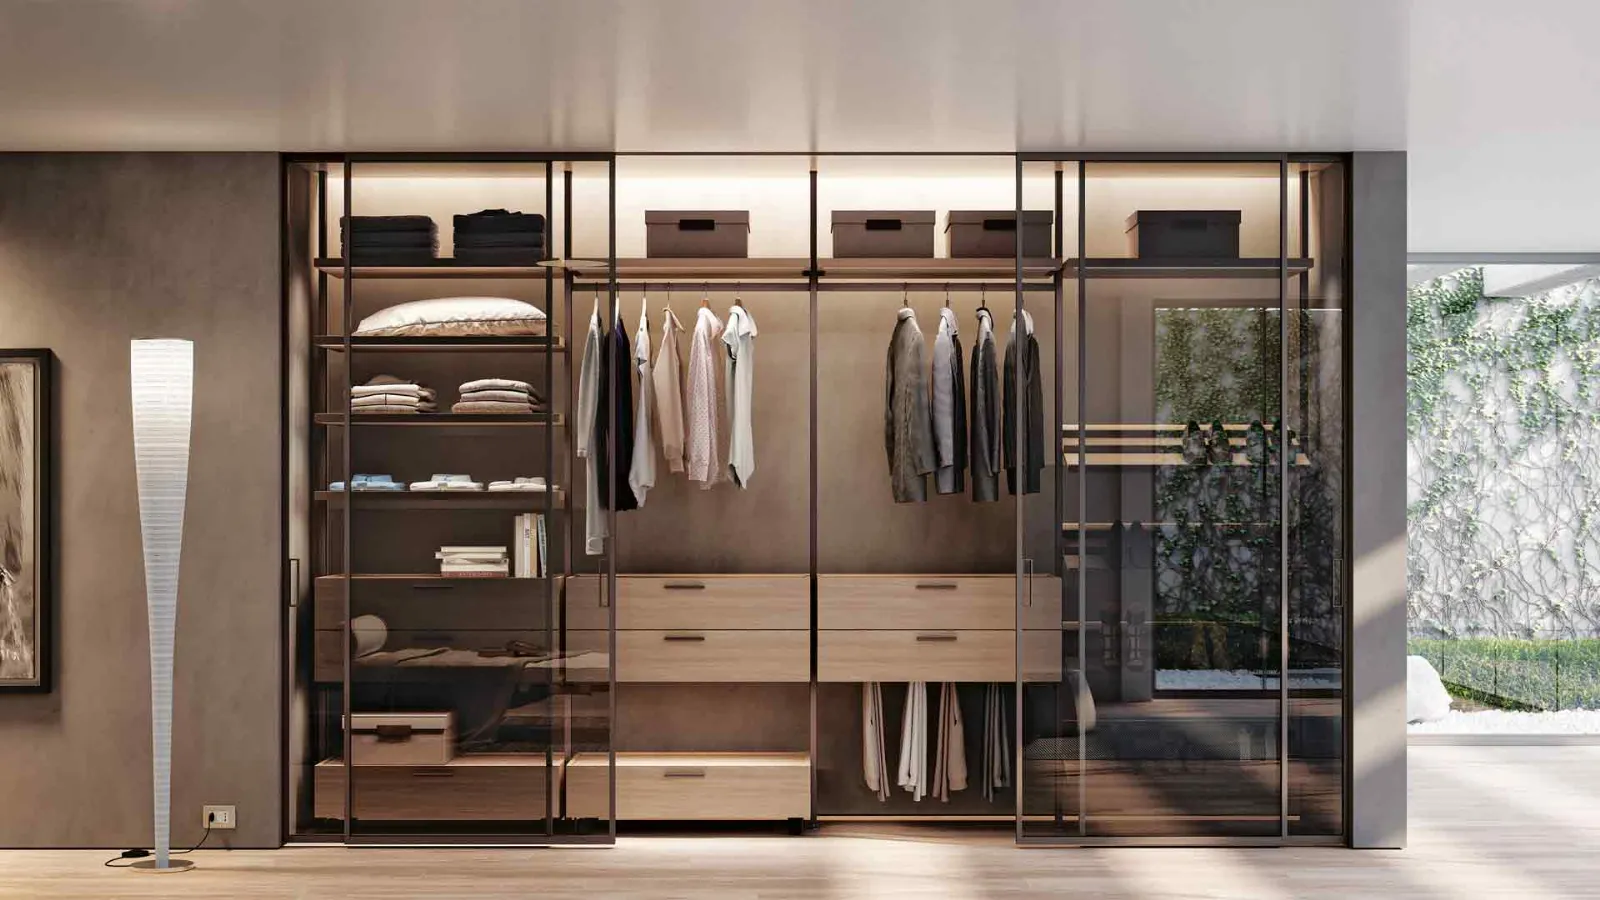 Customize Wardrobe Cabinet Shop in Dubai